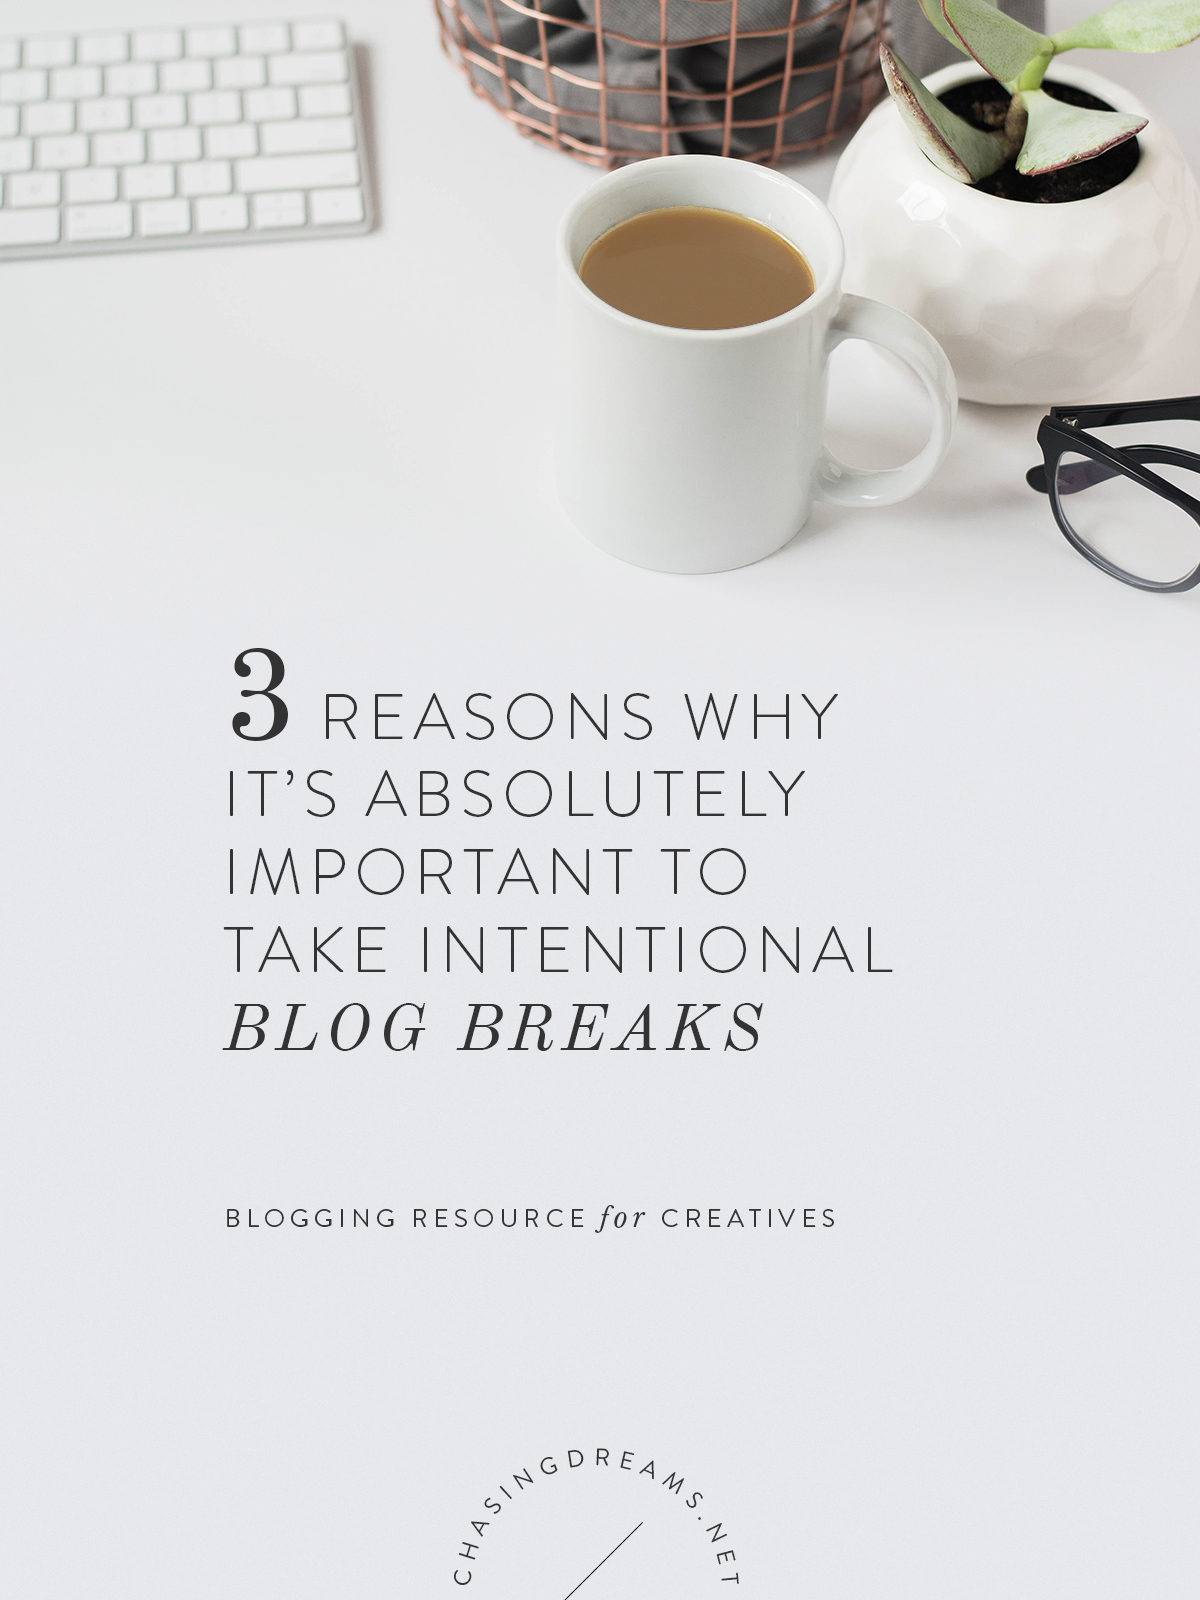 Importance of taking blogging breaks